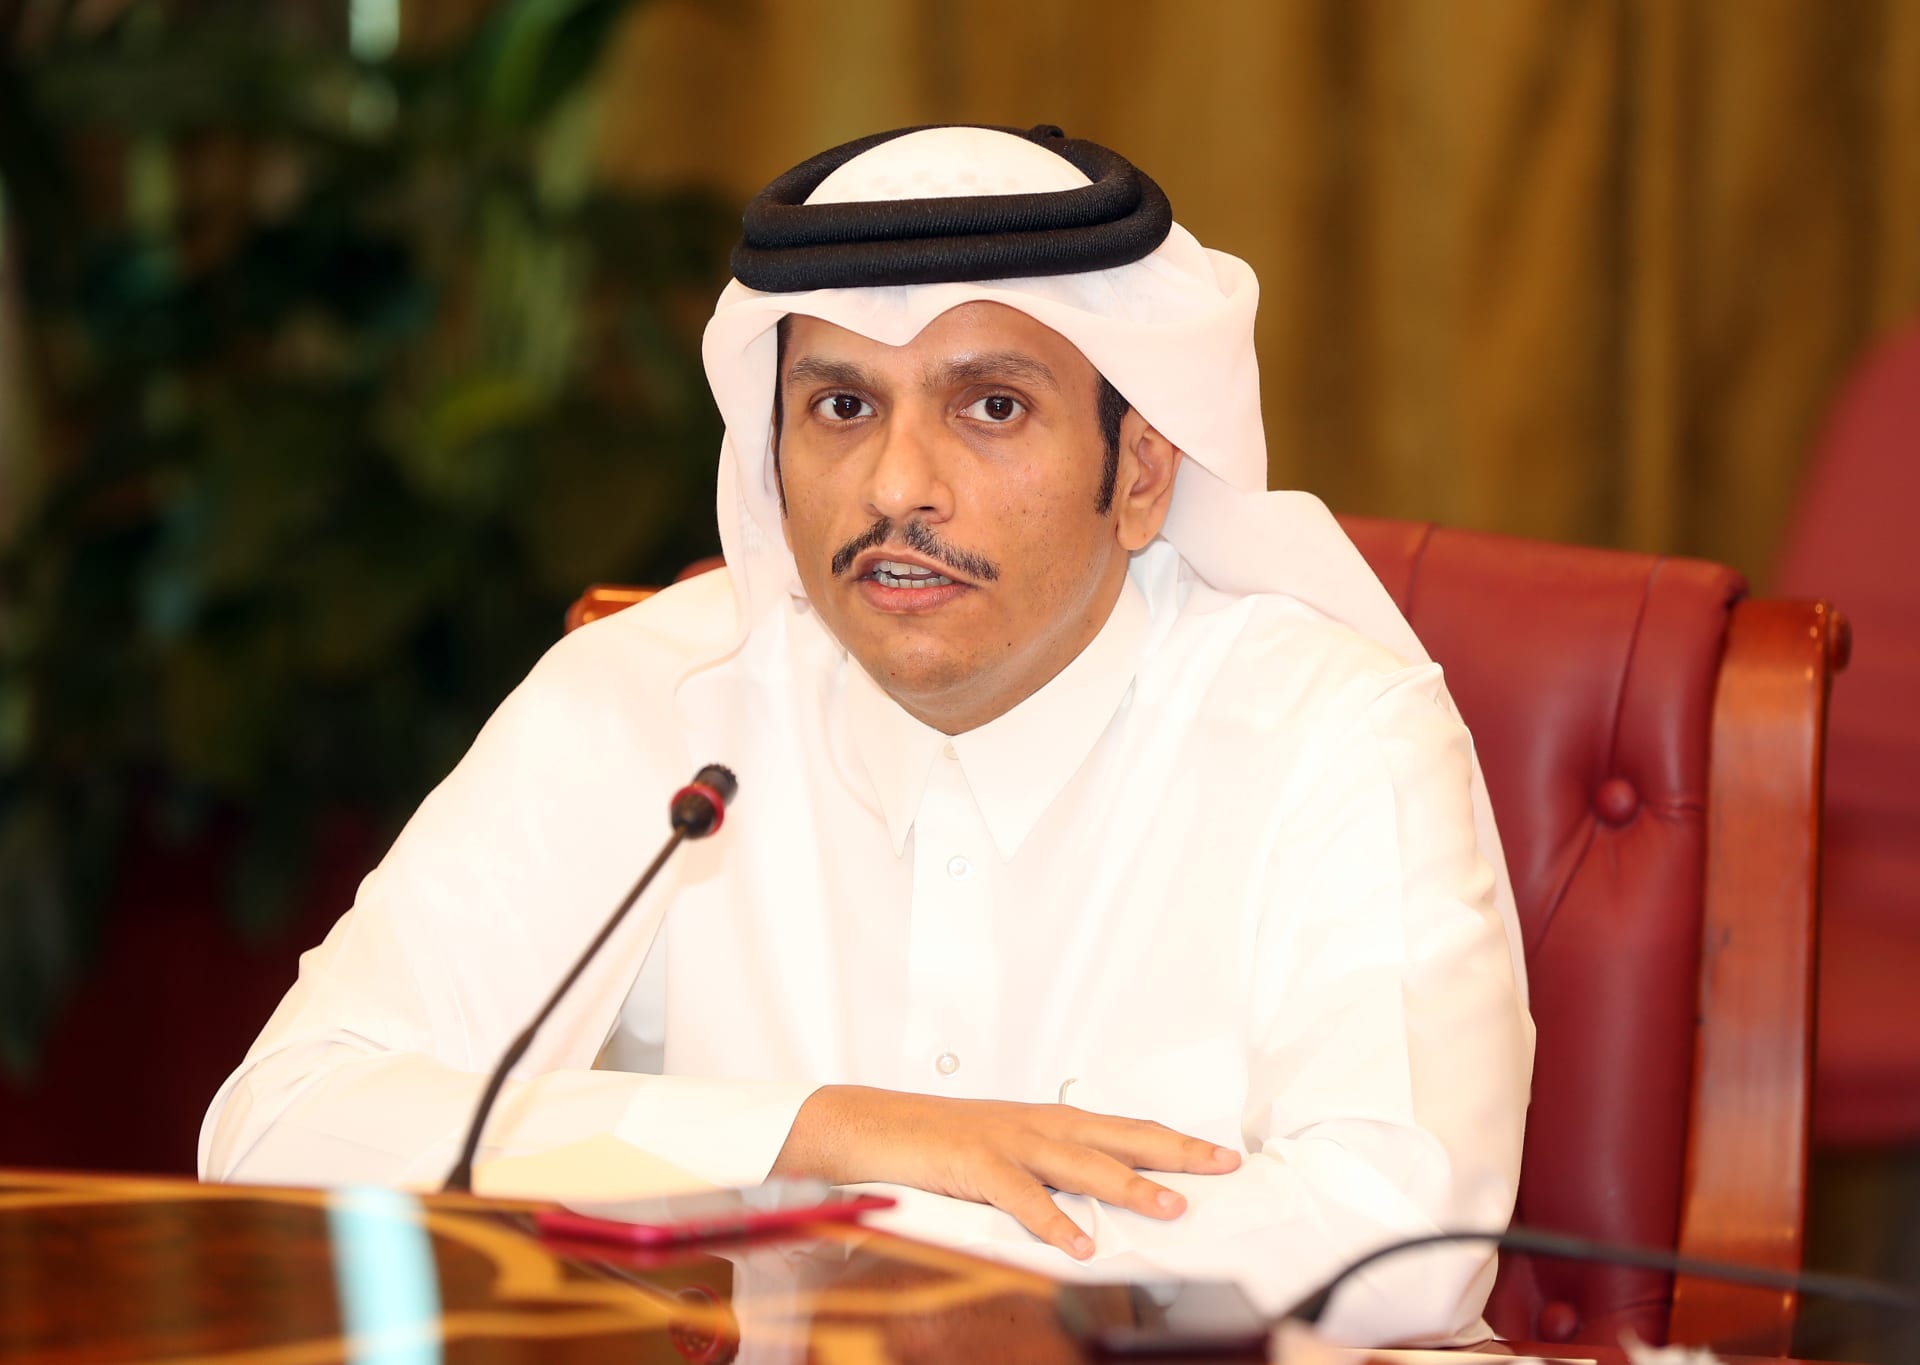 وزير خارجية قطر: قوائم الإرهاب ليست وسيلة لتطبيق رهان سياسي.. ولا نعيش بظل "قانون الغاب"